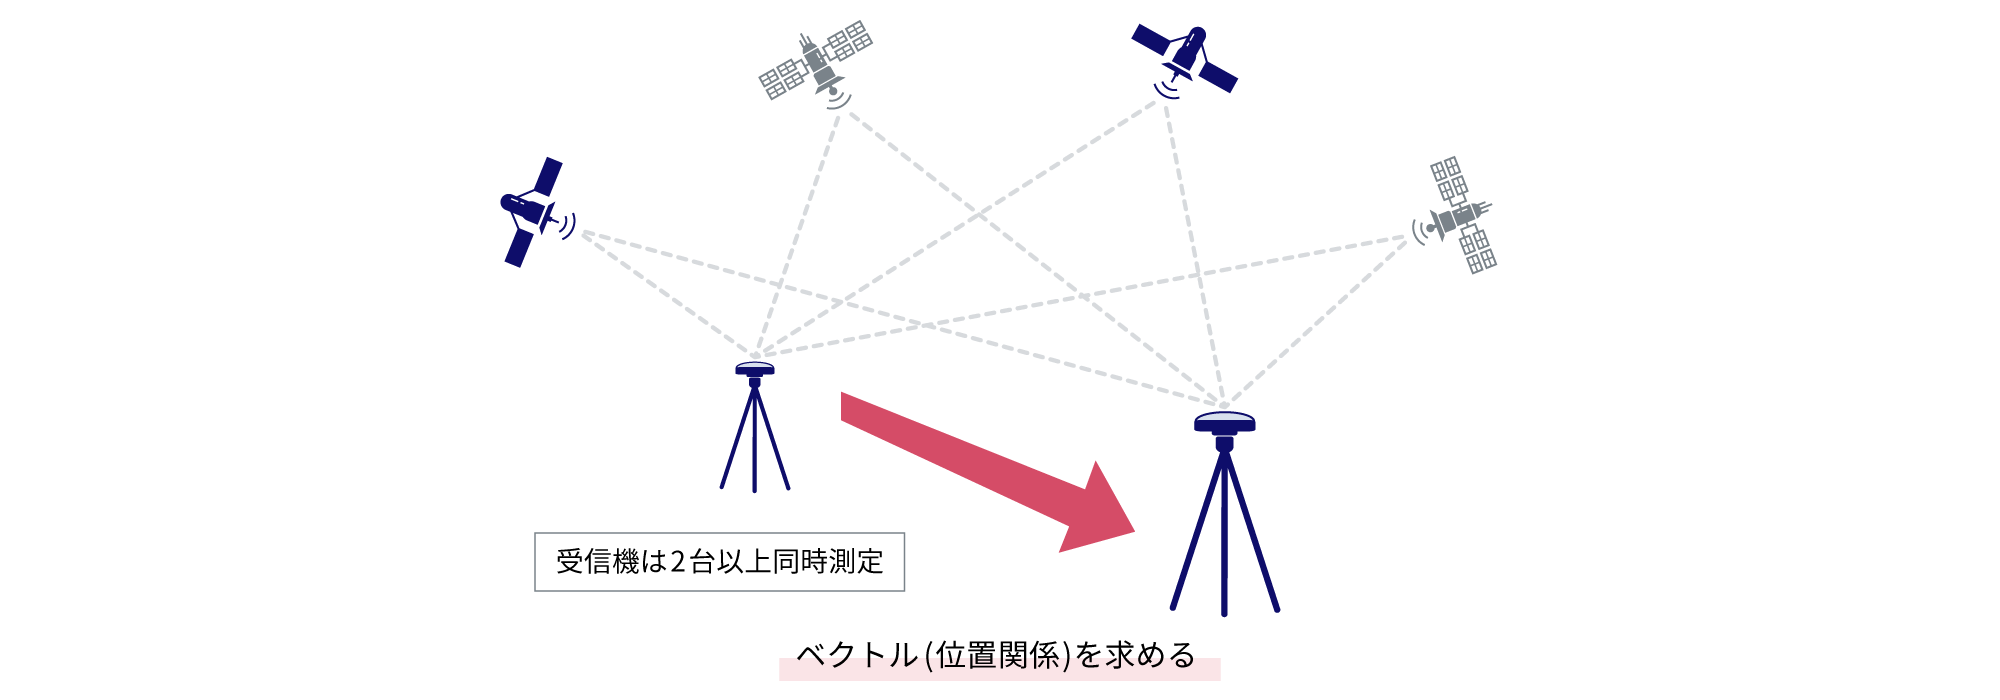 2台以上の受信機で同時測定し、位置を特定する相対測位のイメージ図